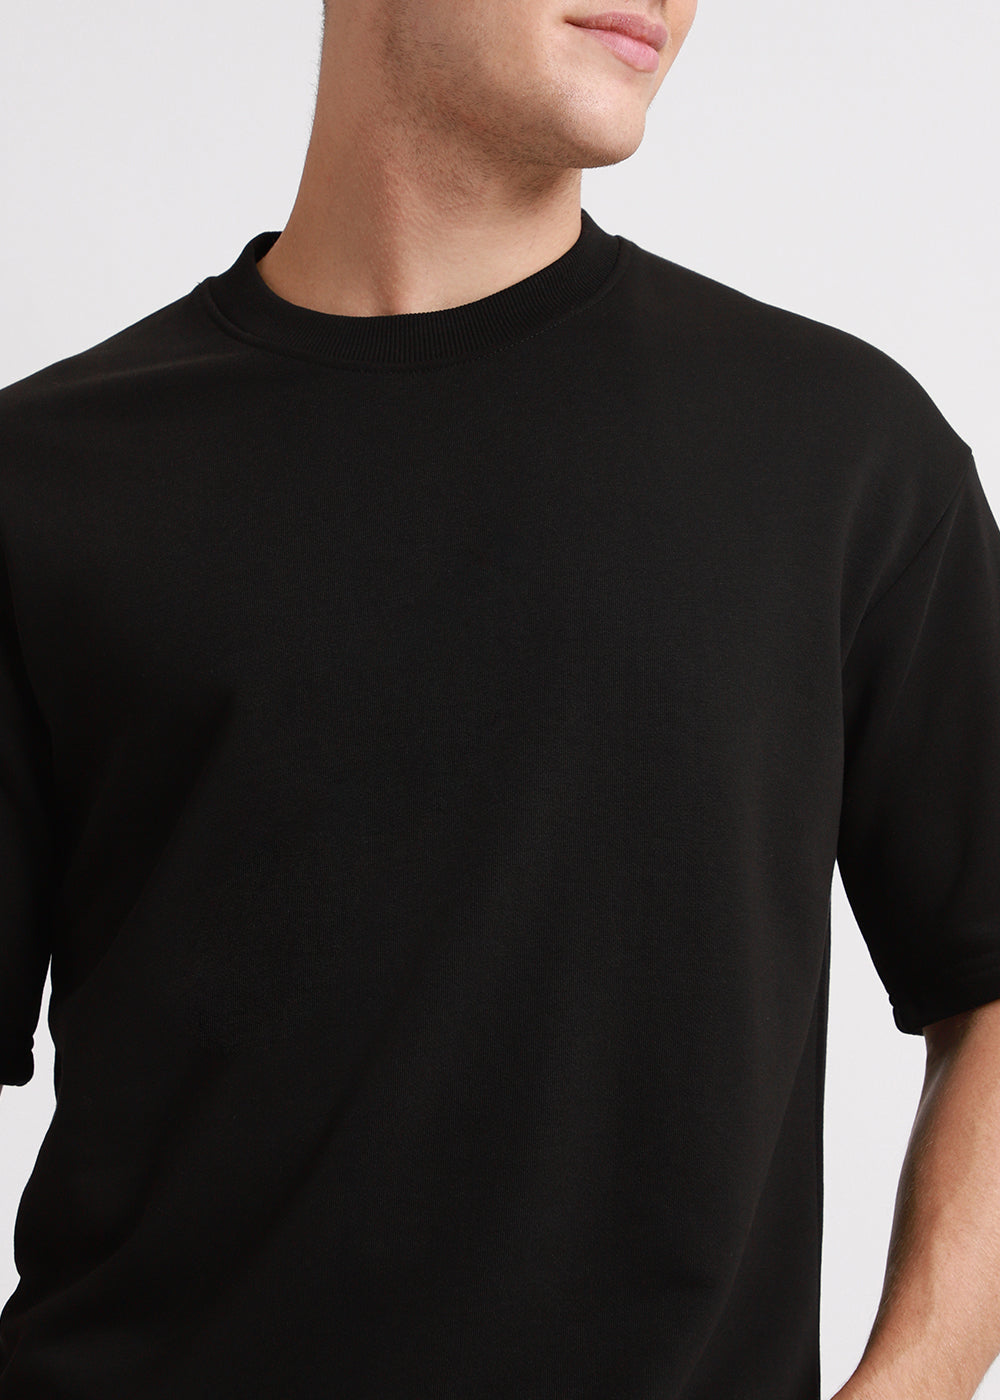 Slasher Black Oversized Basic T-shirt